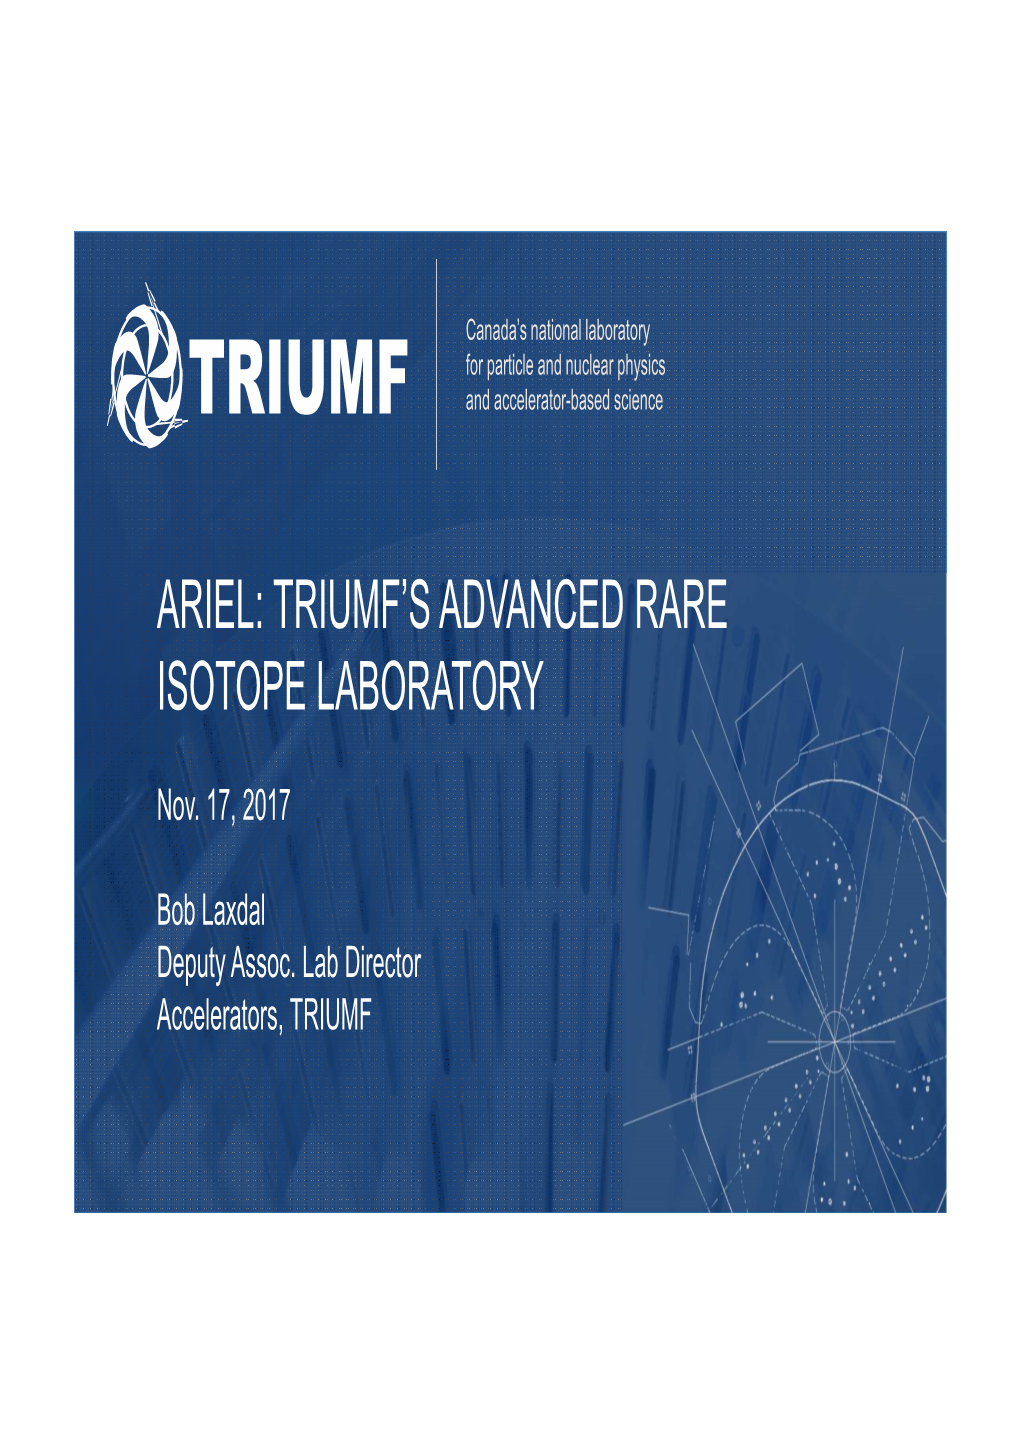 Ariel: Triumf's Advanced Rare Isotope Laboratory